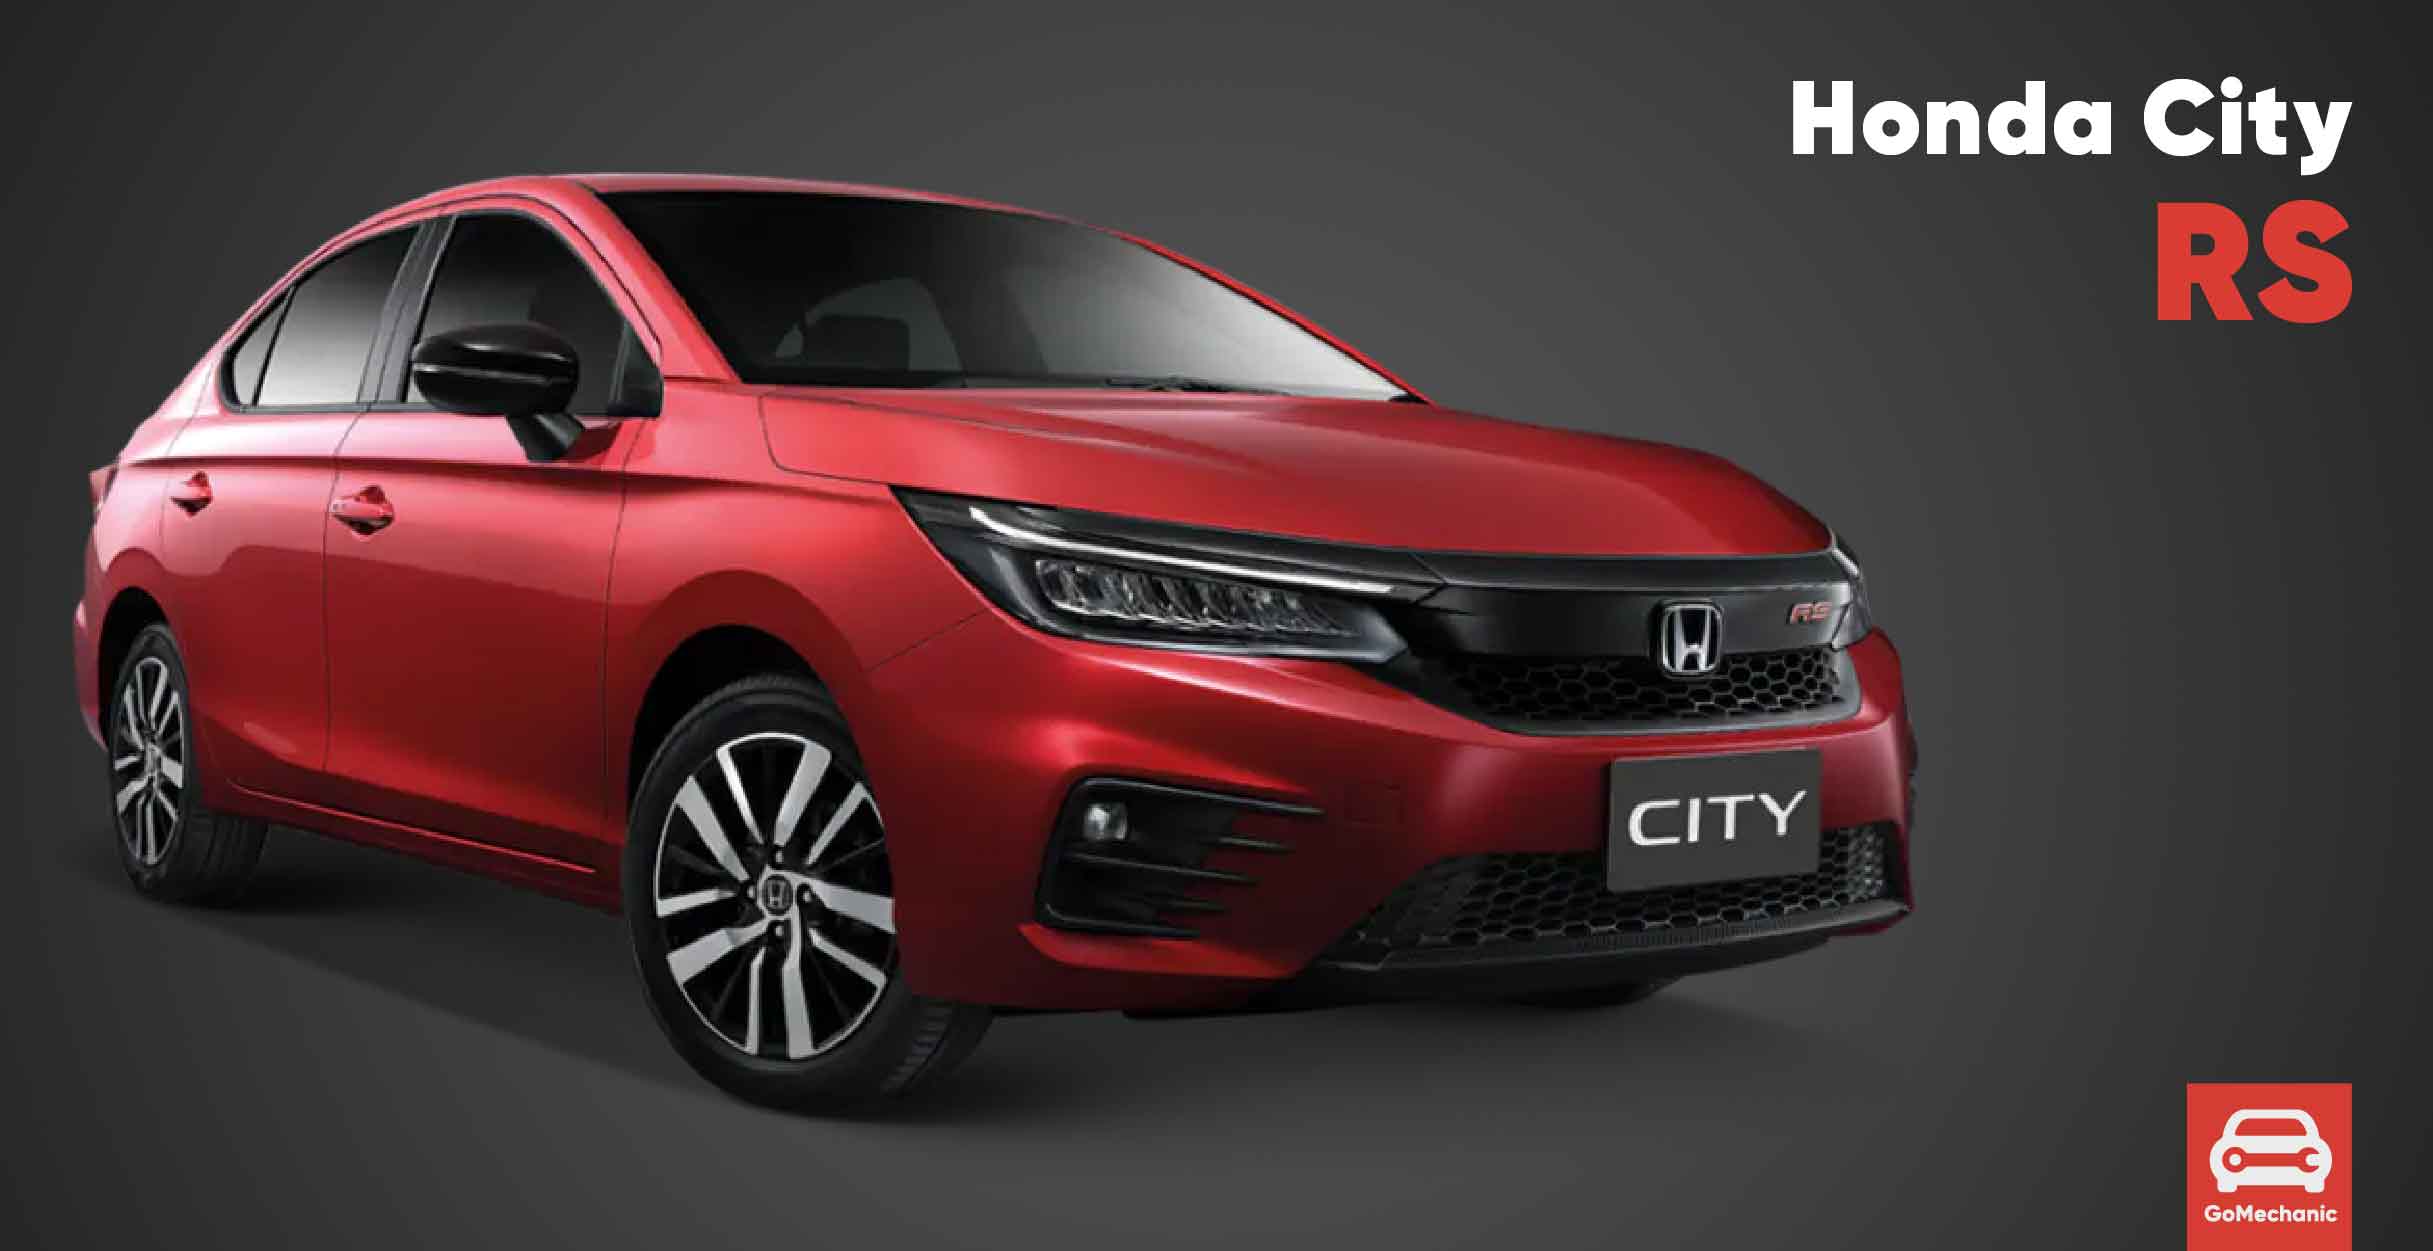 5 Global Honda Cars that we want in India